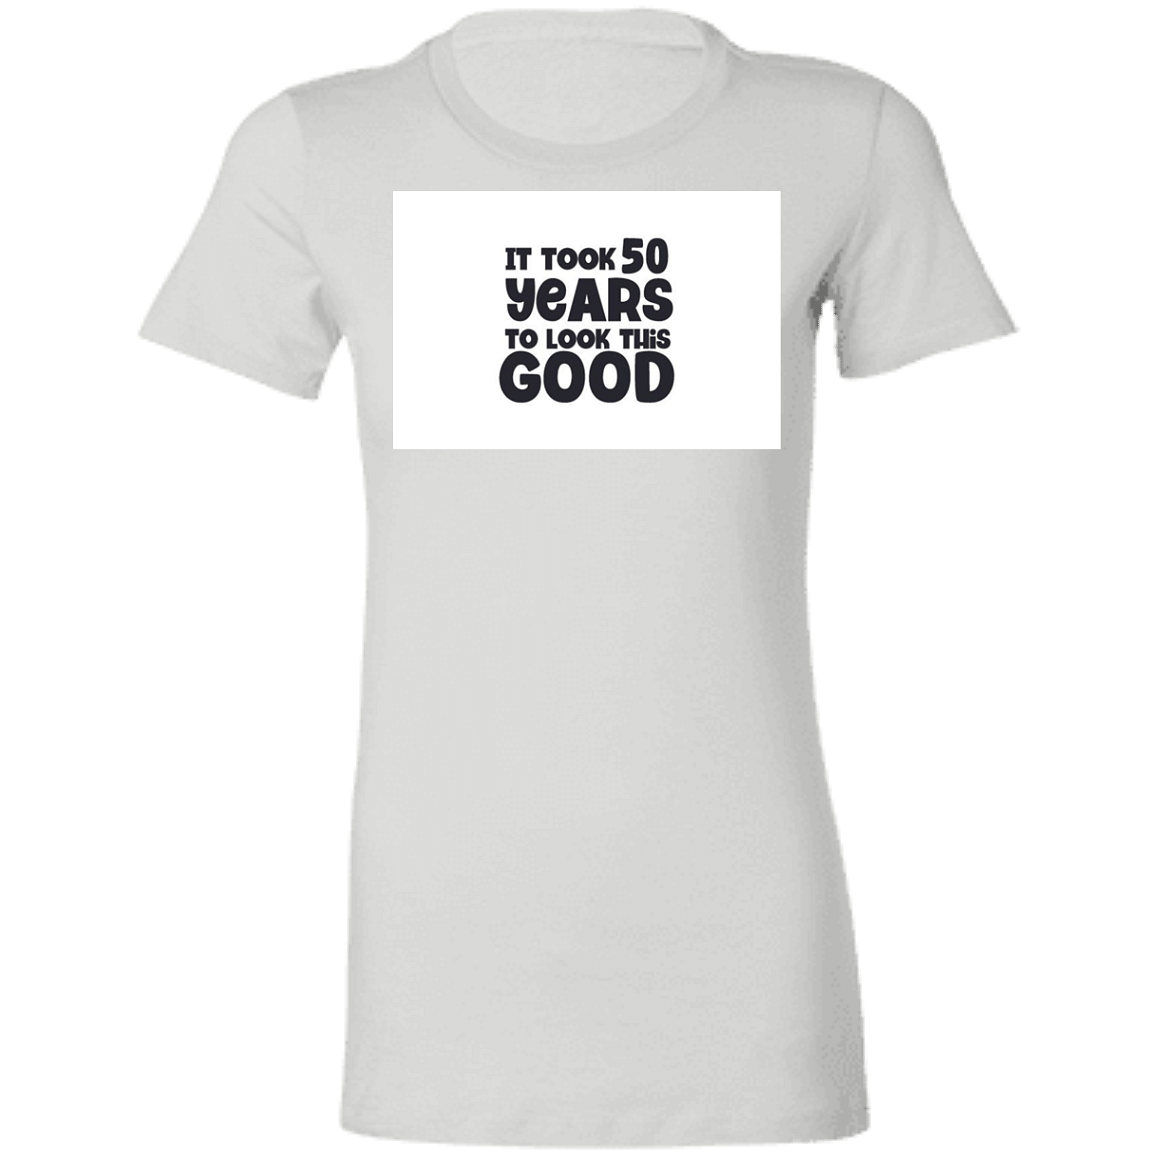 6004 Ladies' Favorite T-Shirt